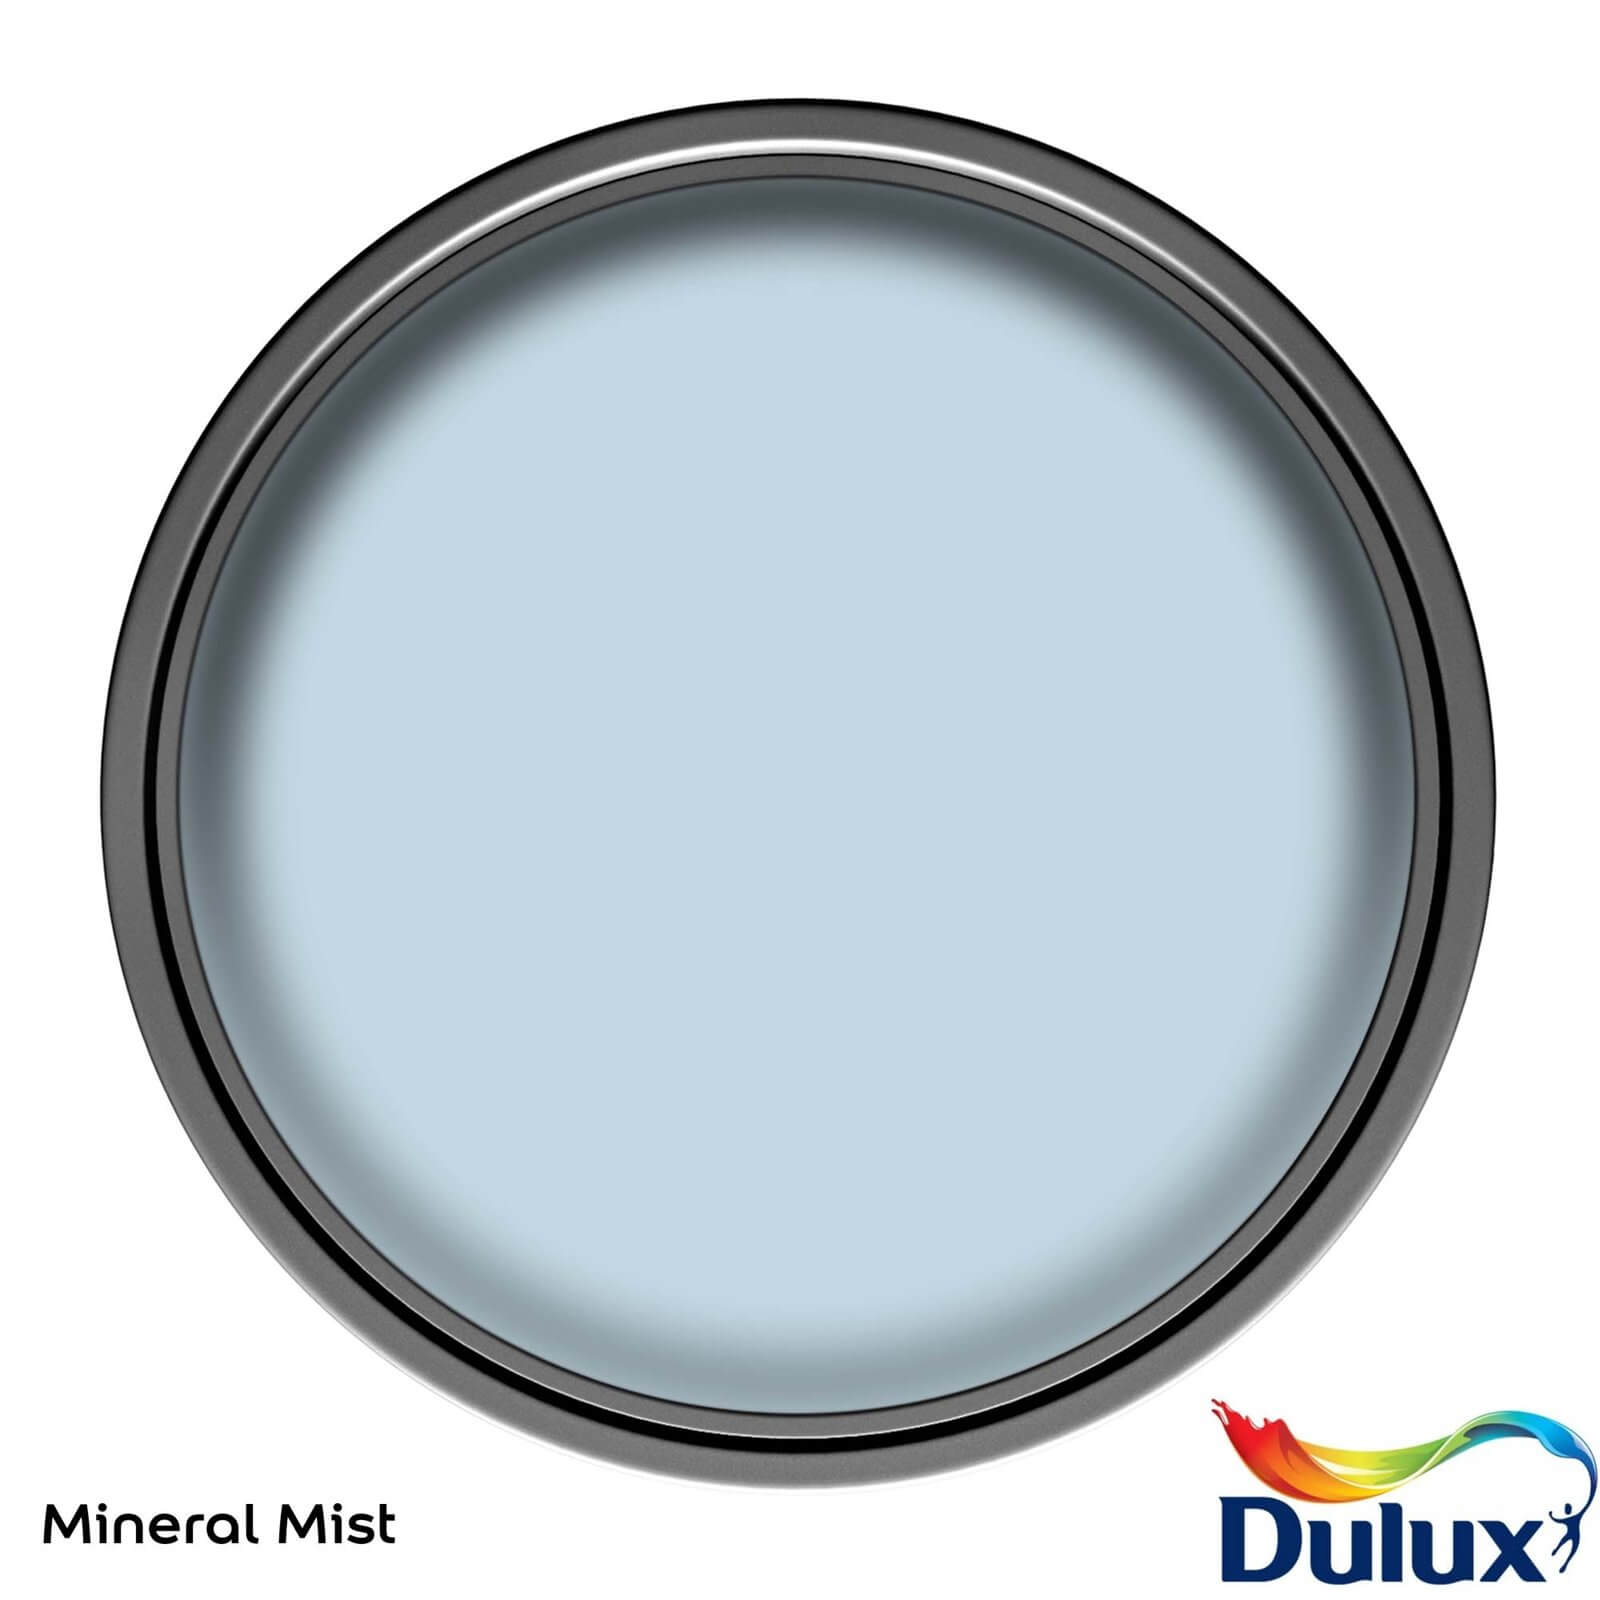 Dulux Easycare Washable & Tough Matt Paint Mineral Mist - 2.5L